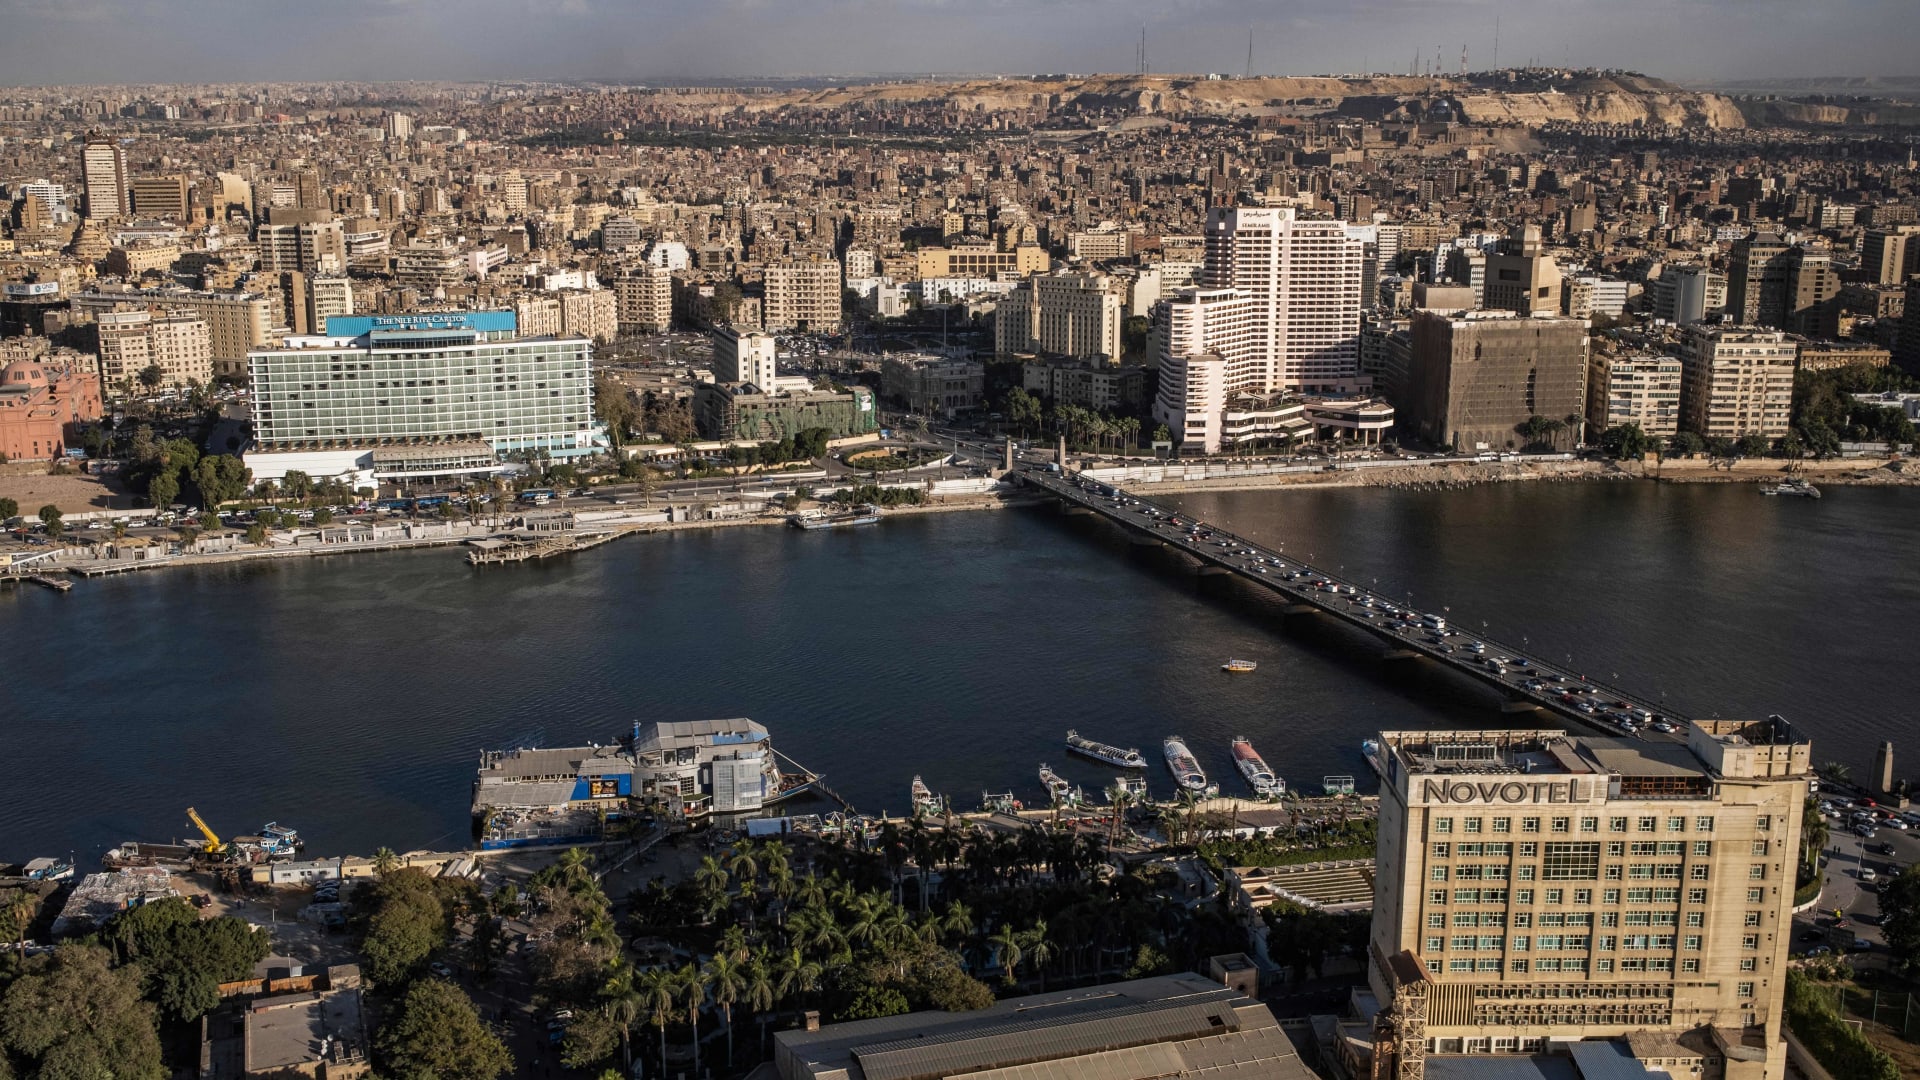 مصر تعلن ترشيد استهلاك الكهرباء في مباني الحكومة 